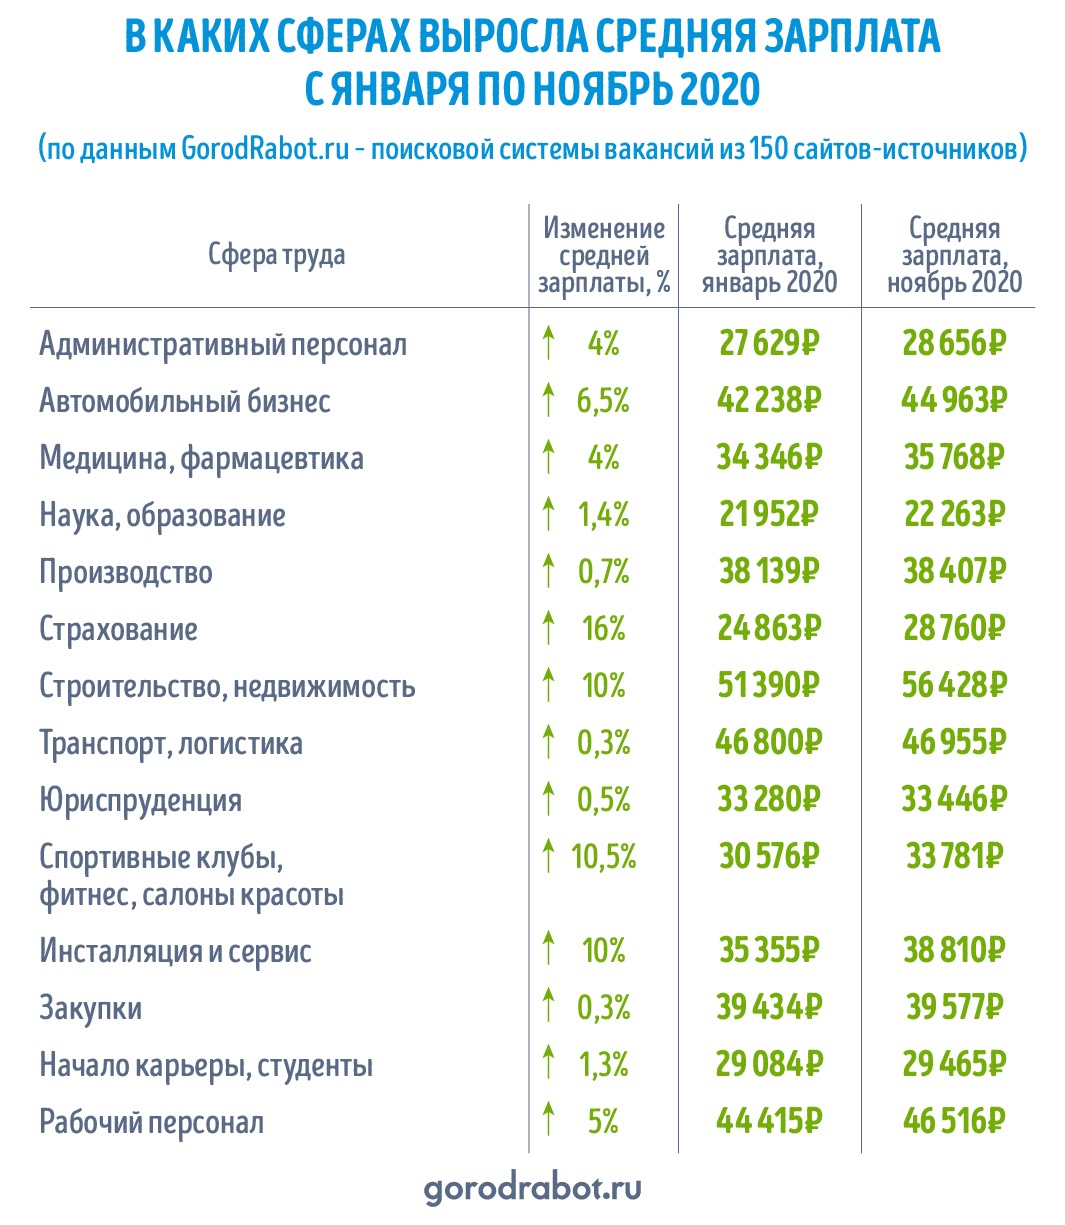 Мишустин средняя зарплата в россии. Средняя заработная плата в России 2020 году. Средняя заработная плата в РФ 2020 Росстат. Средняя заработная плата по России в 2020. Средняя зарплата в России 2020.